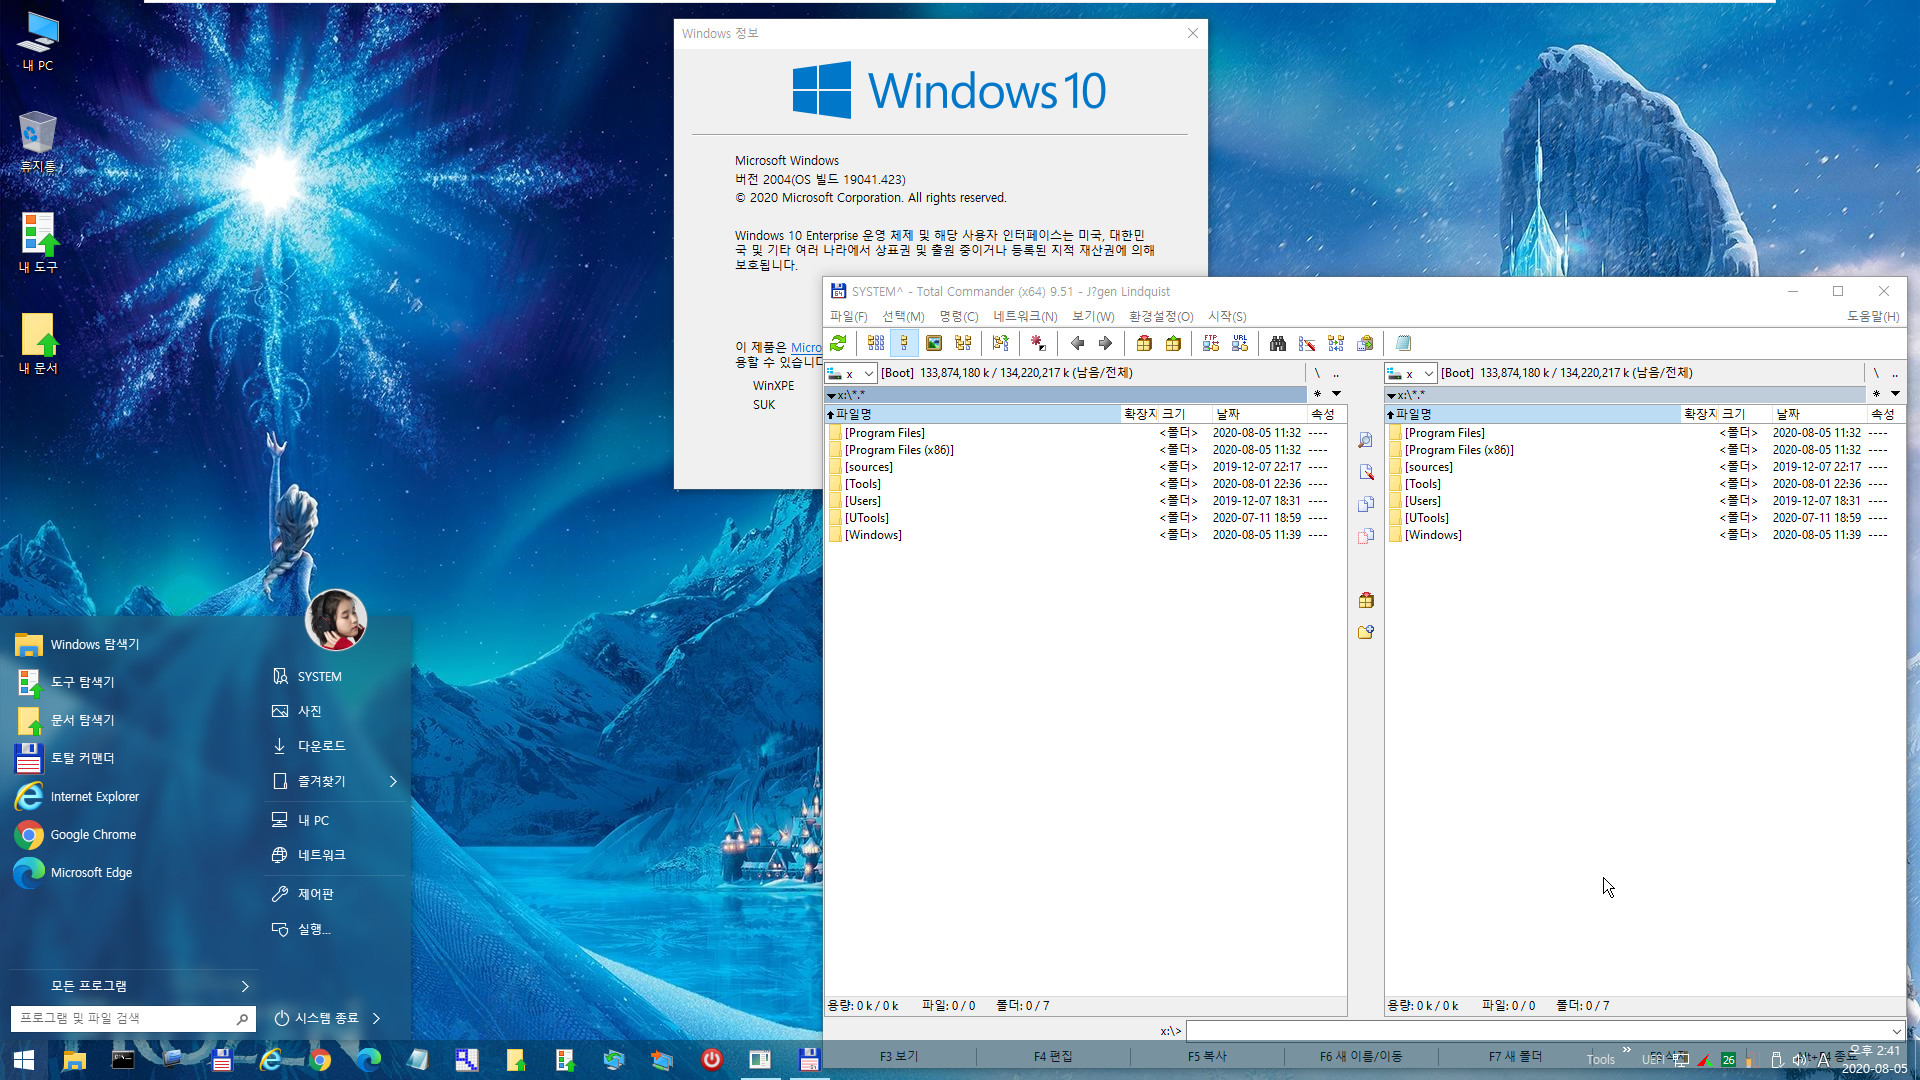 2020-08-01일자 수시 업데이트 통합 - Windows 10 버전 2004 + 버전 20H2 누적 업데이트 KB4568831 (OS 빌드 19041.423 + 19042.423) -  PE 만들기 테스트 2020-08-05_144110.jpg